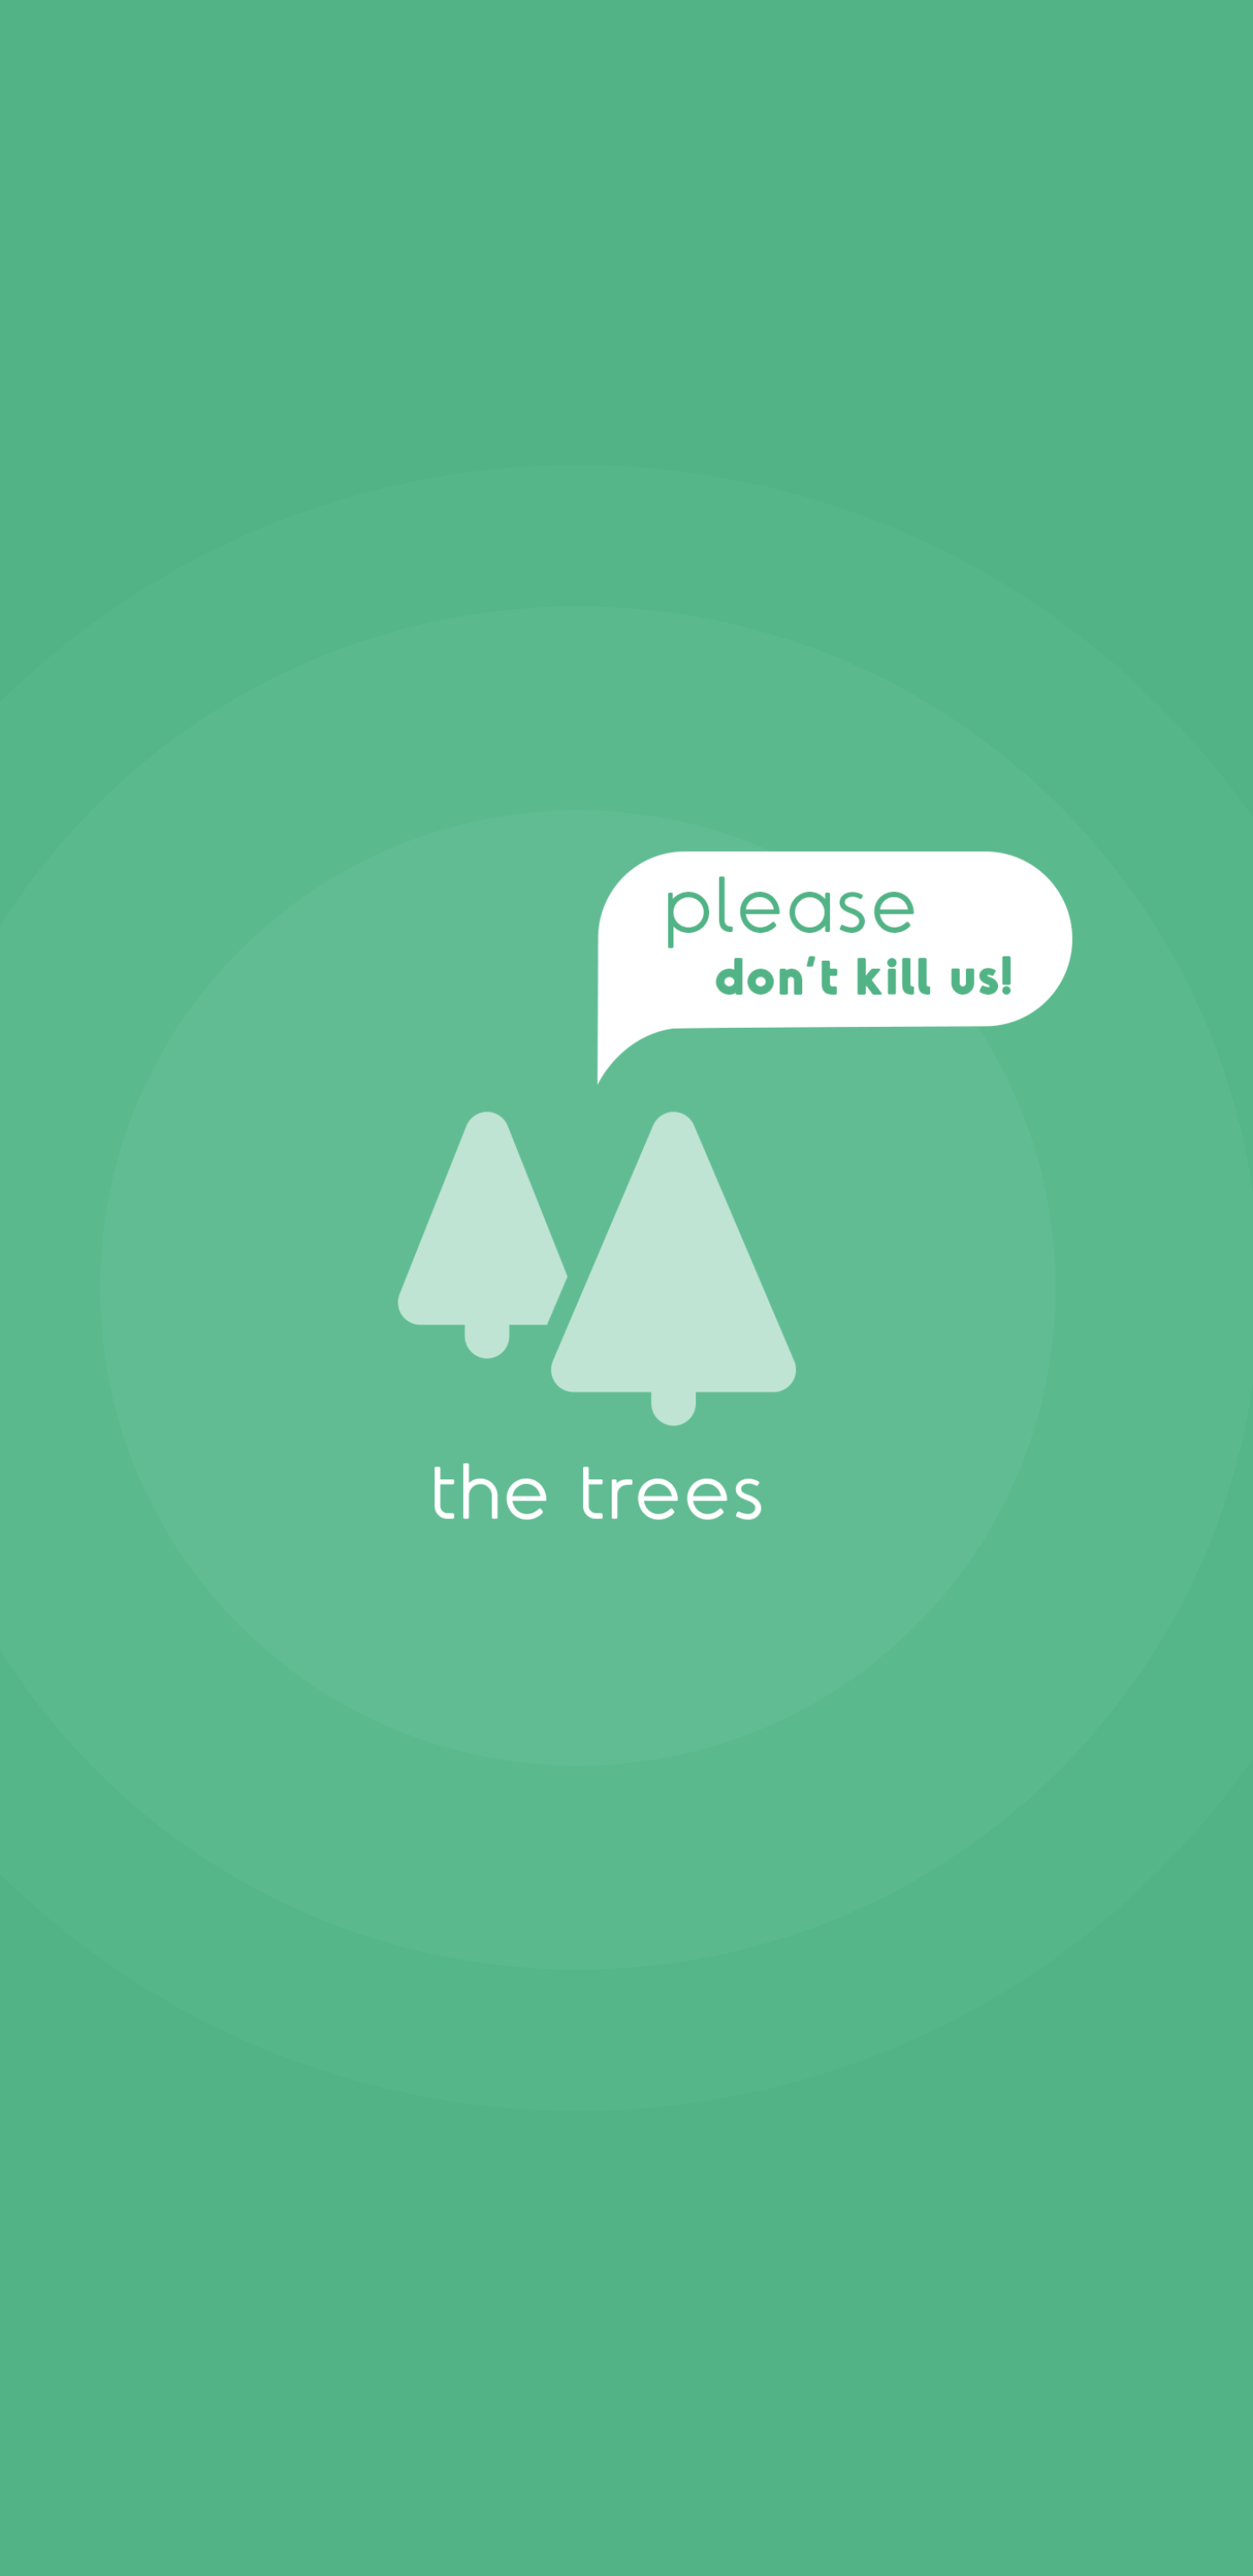 Don't kill the trees